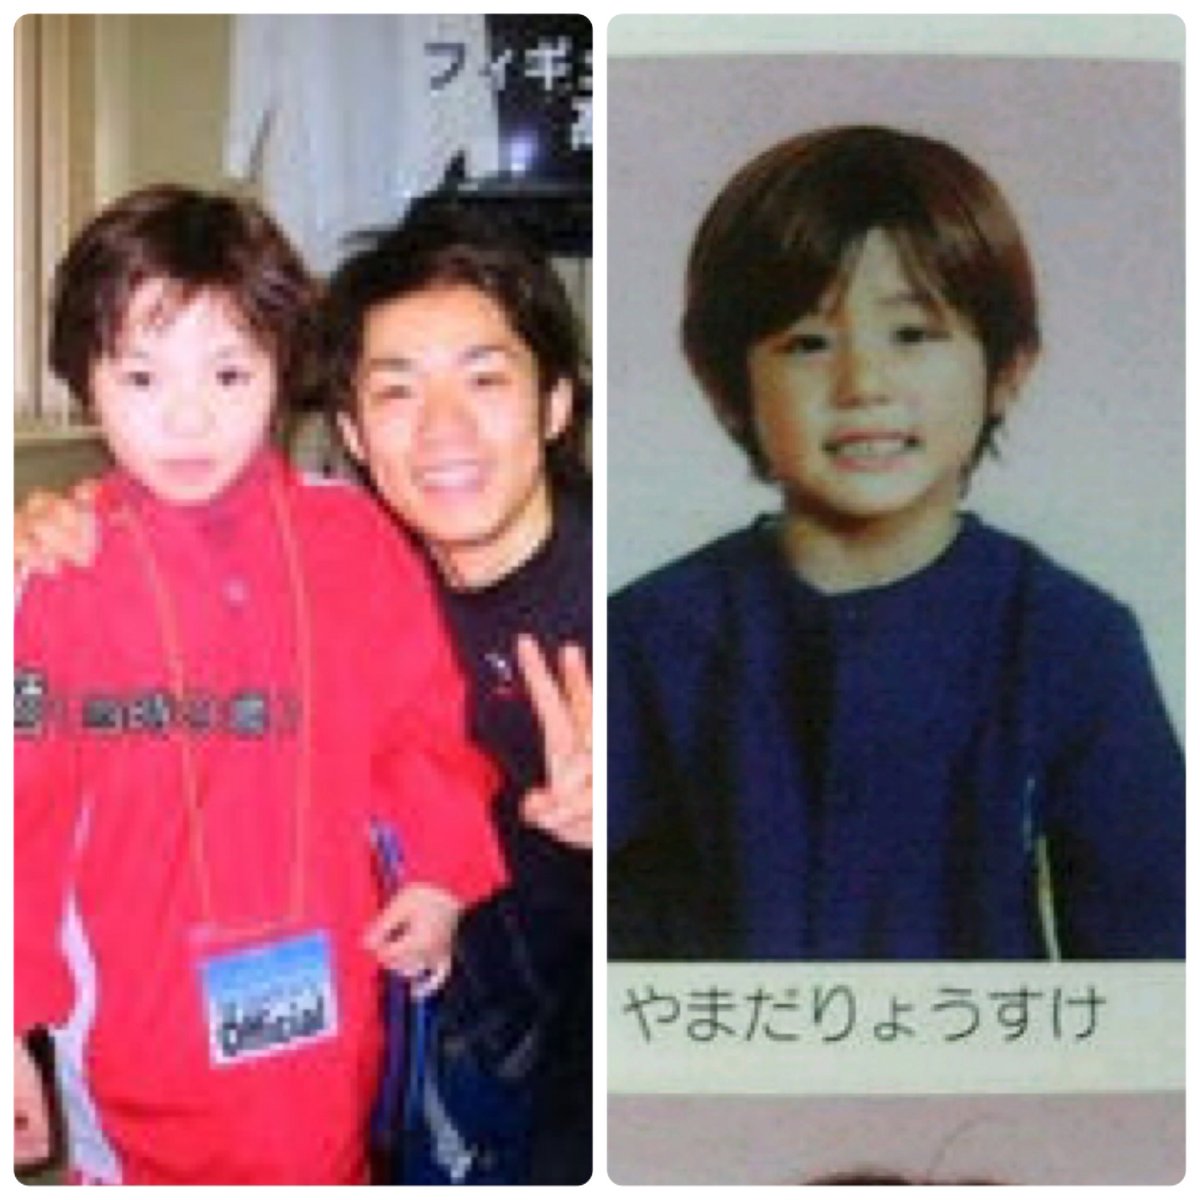 あみ フィギュアスケートの宇野昌磨選手の幼少期と山田涼介の幼少期が似てる件について どちらもかわいいなあ